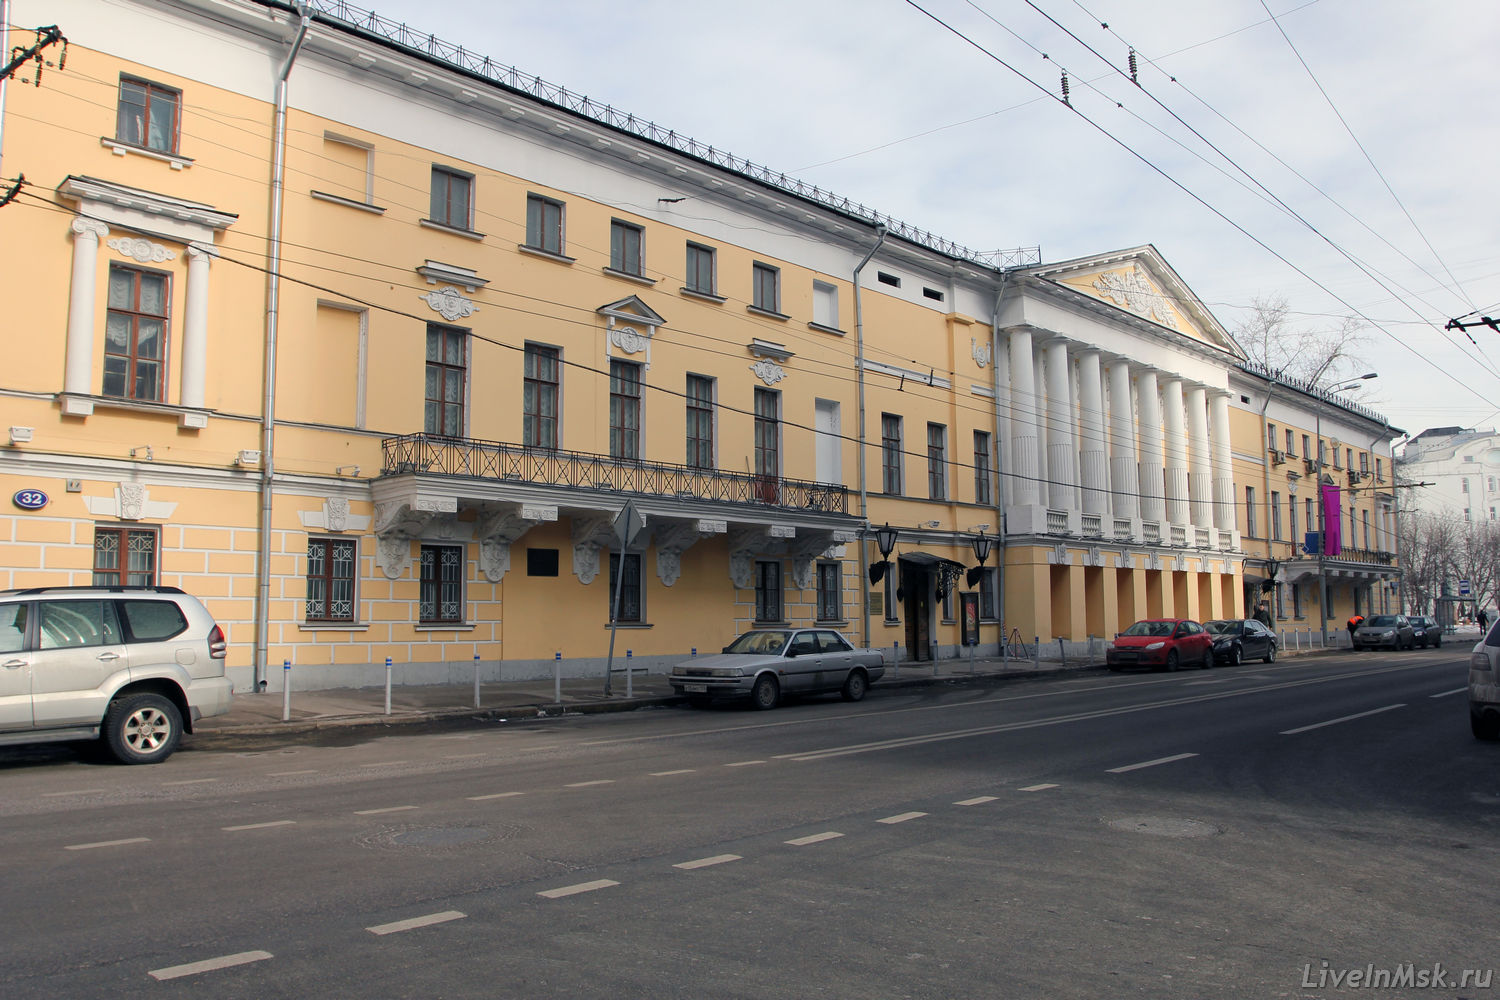 Поливановская гимназия, фото 2015 года